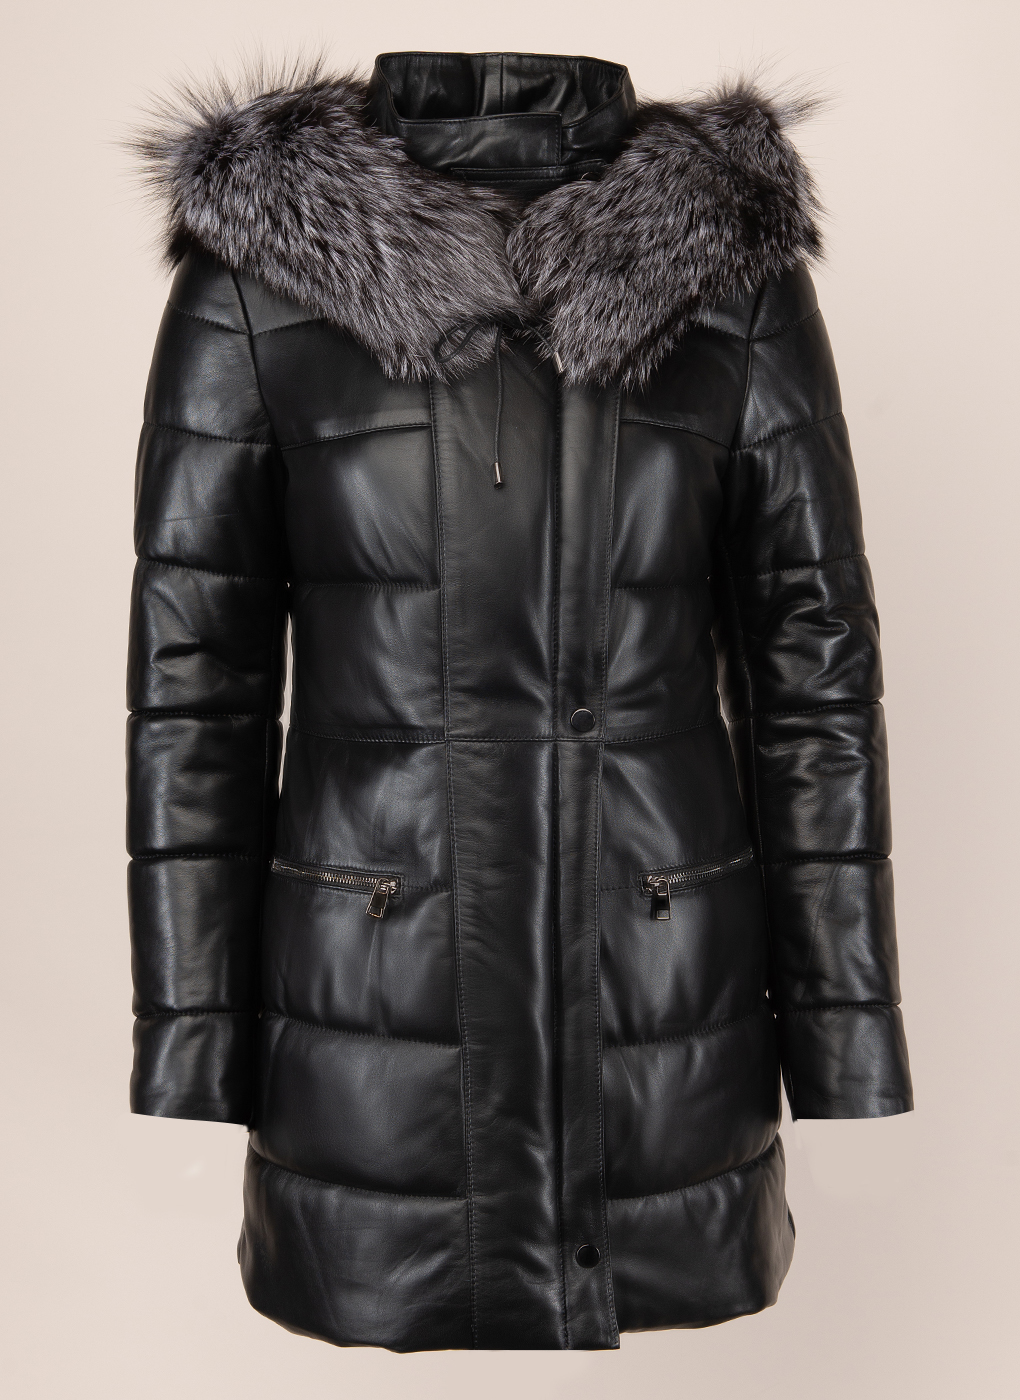 Кожаная куртка женская Imperiafabrik 1570401 черная 50 RU